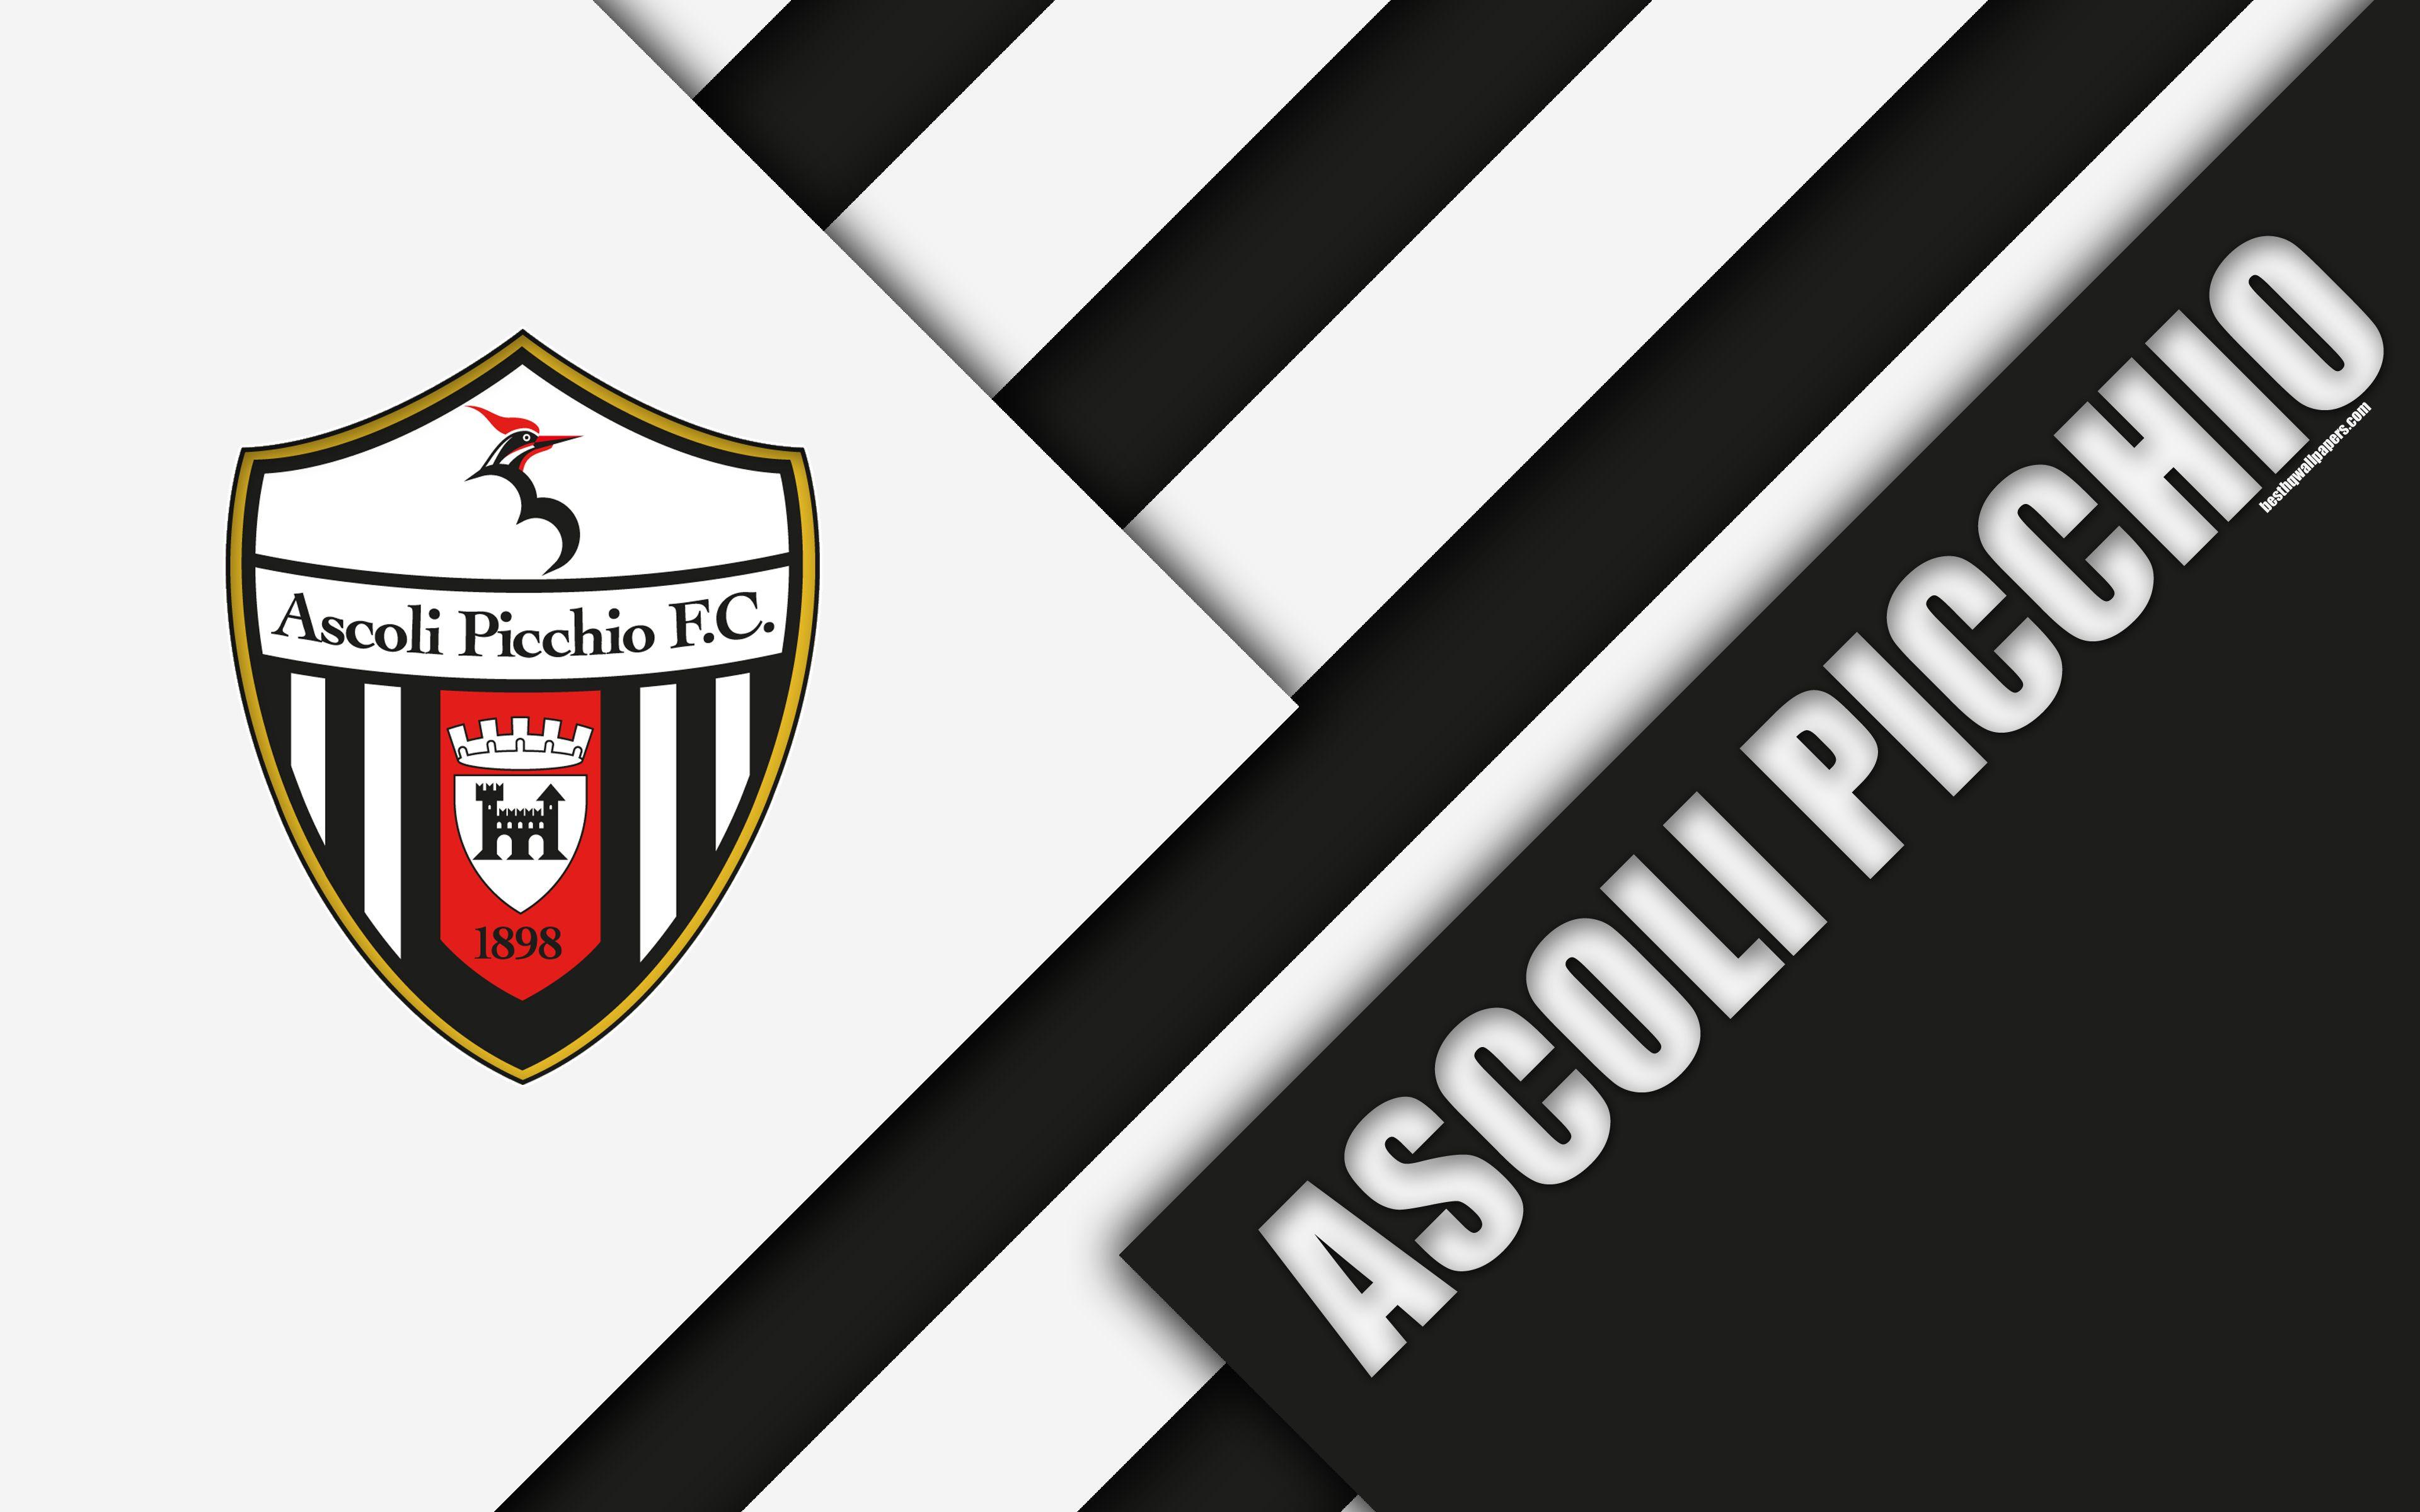 Ascoli Logo - Download wallpapers Ascoli Picchio FC, 4k, material design, logo ...